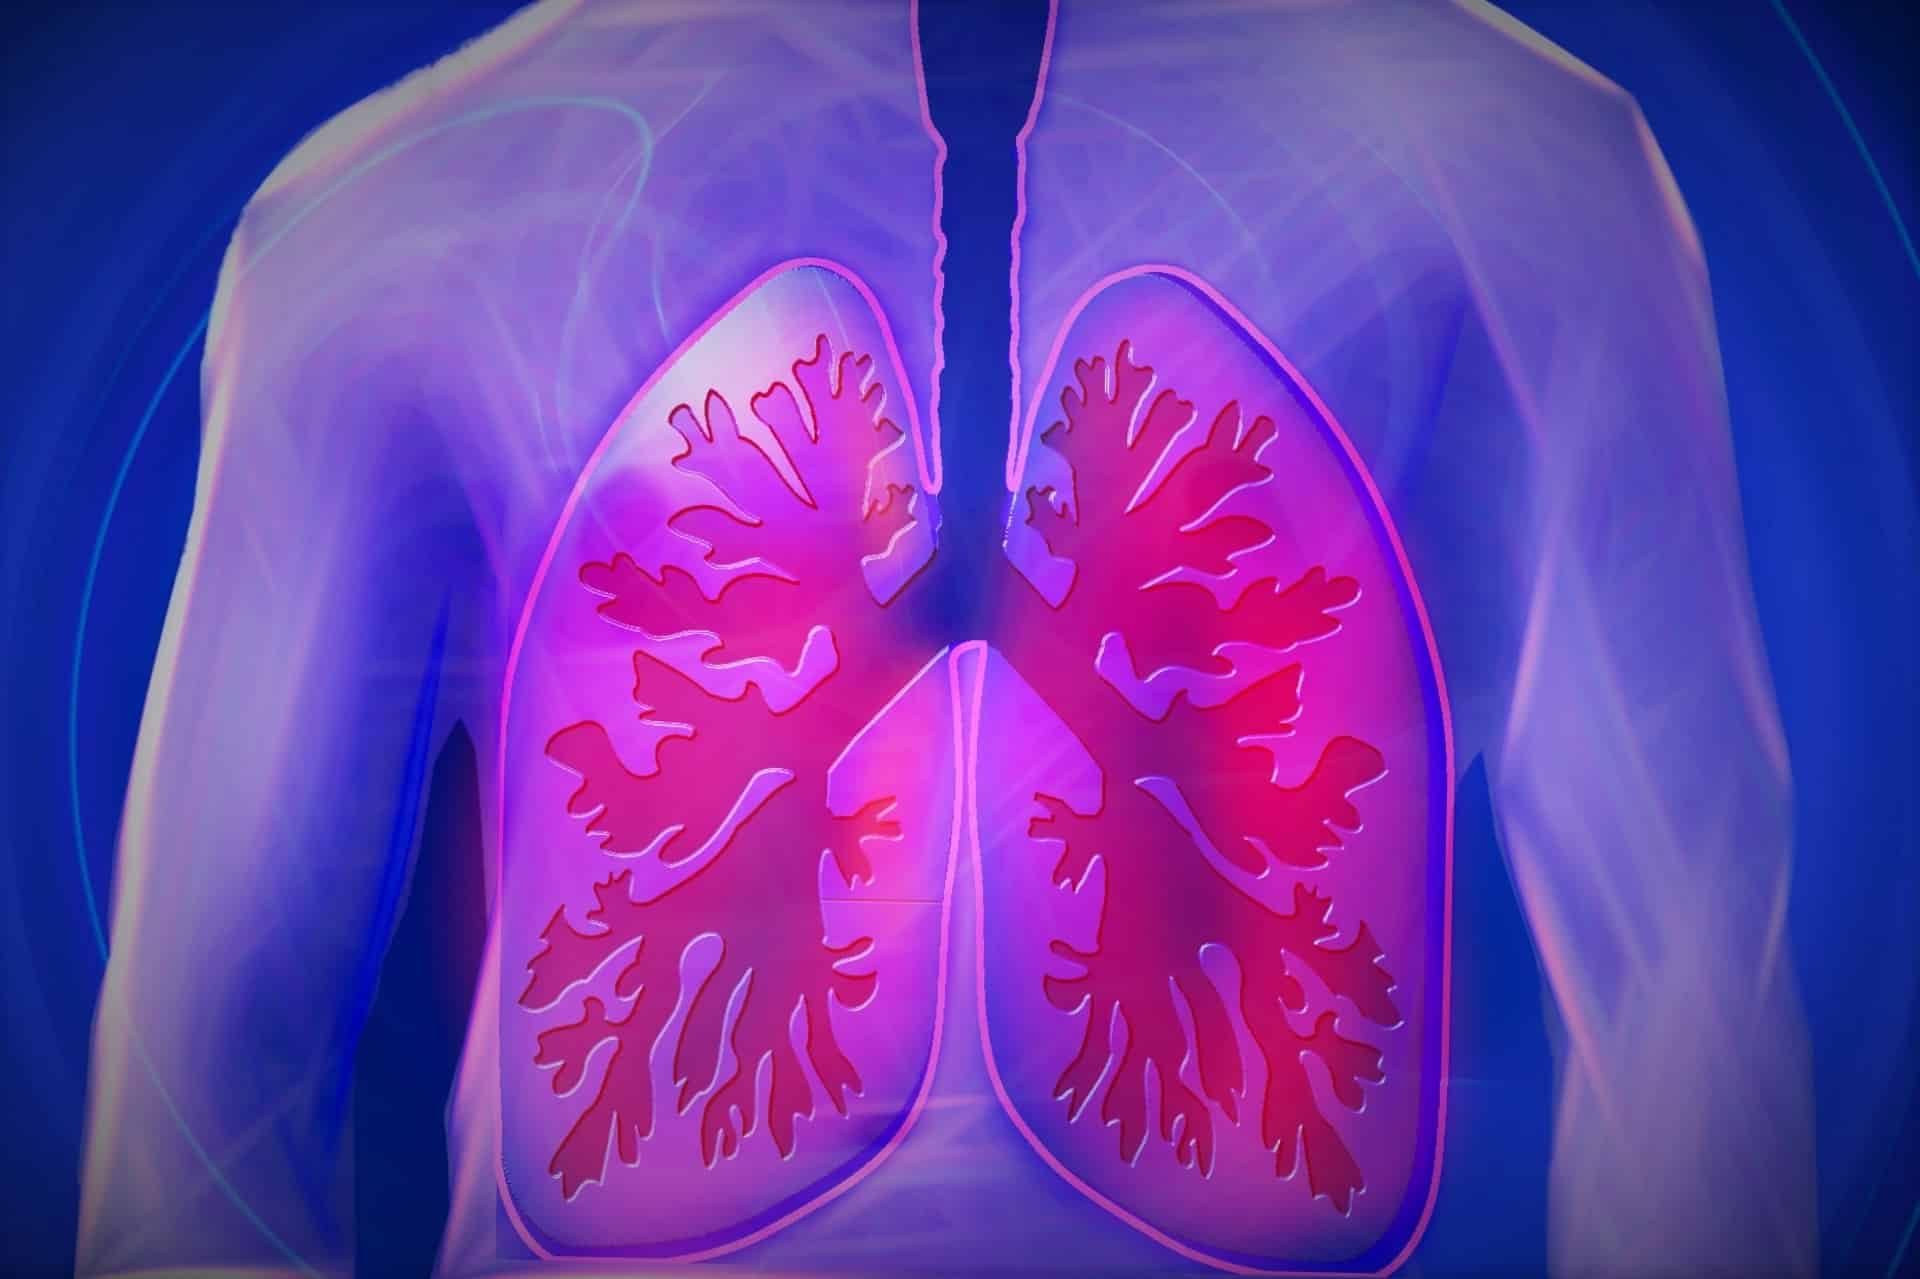 Trpíte na zápal plic? Povíme vám, jaké má nemoc příznaky